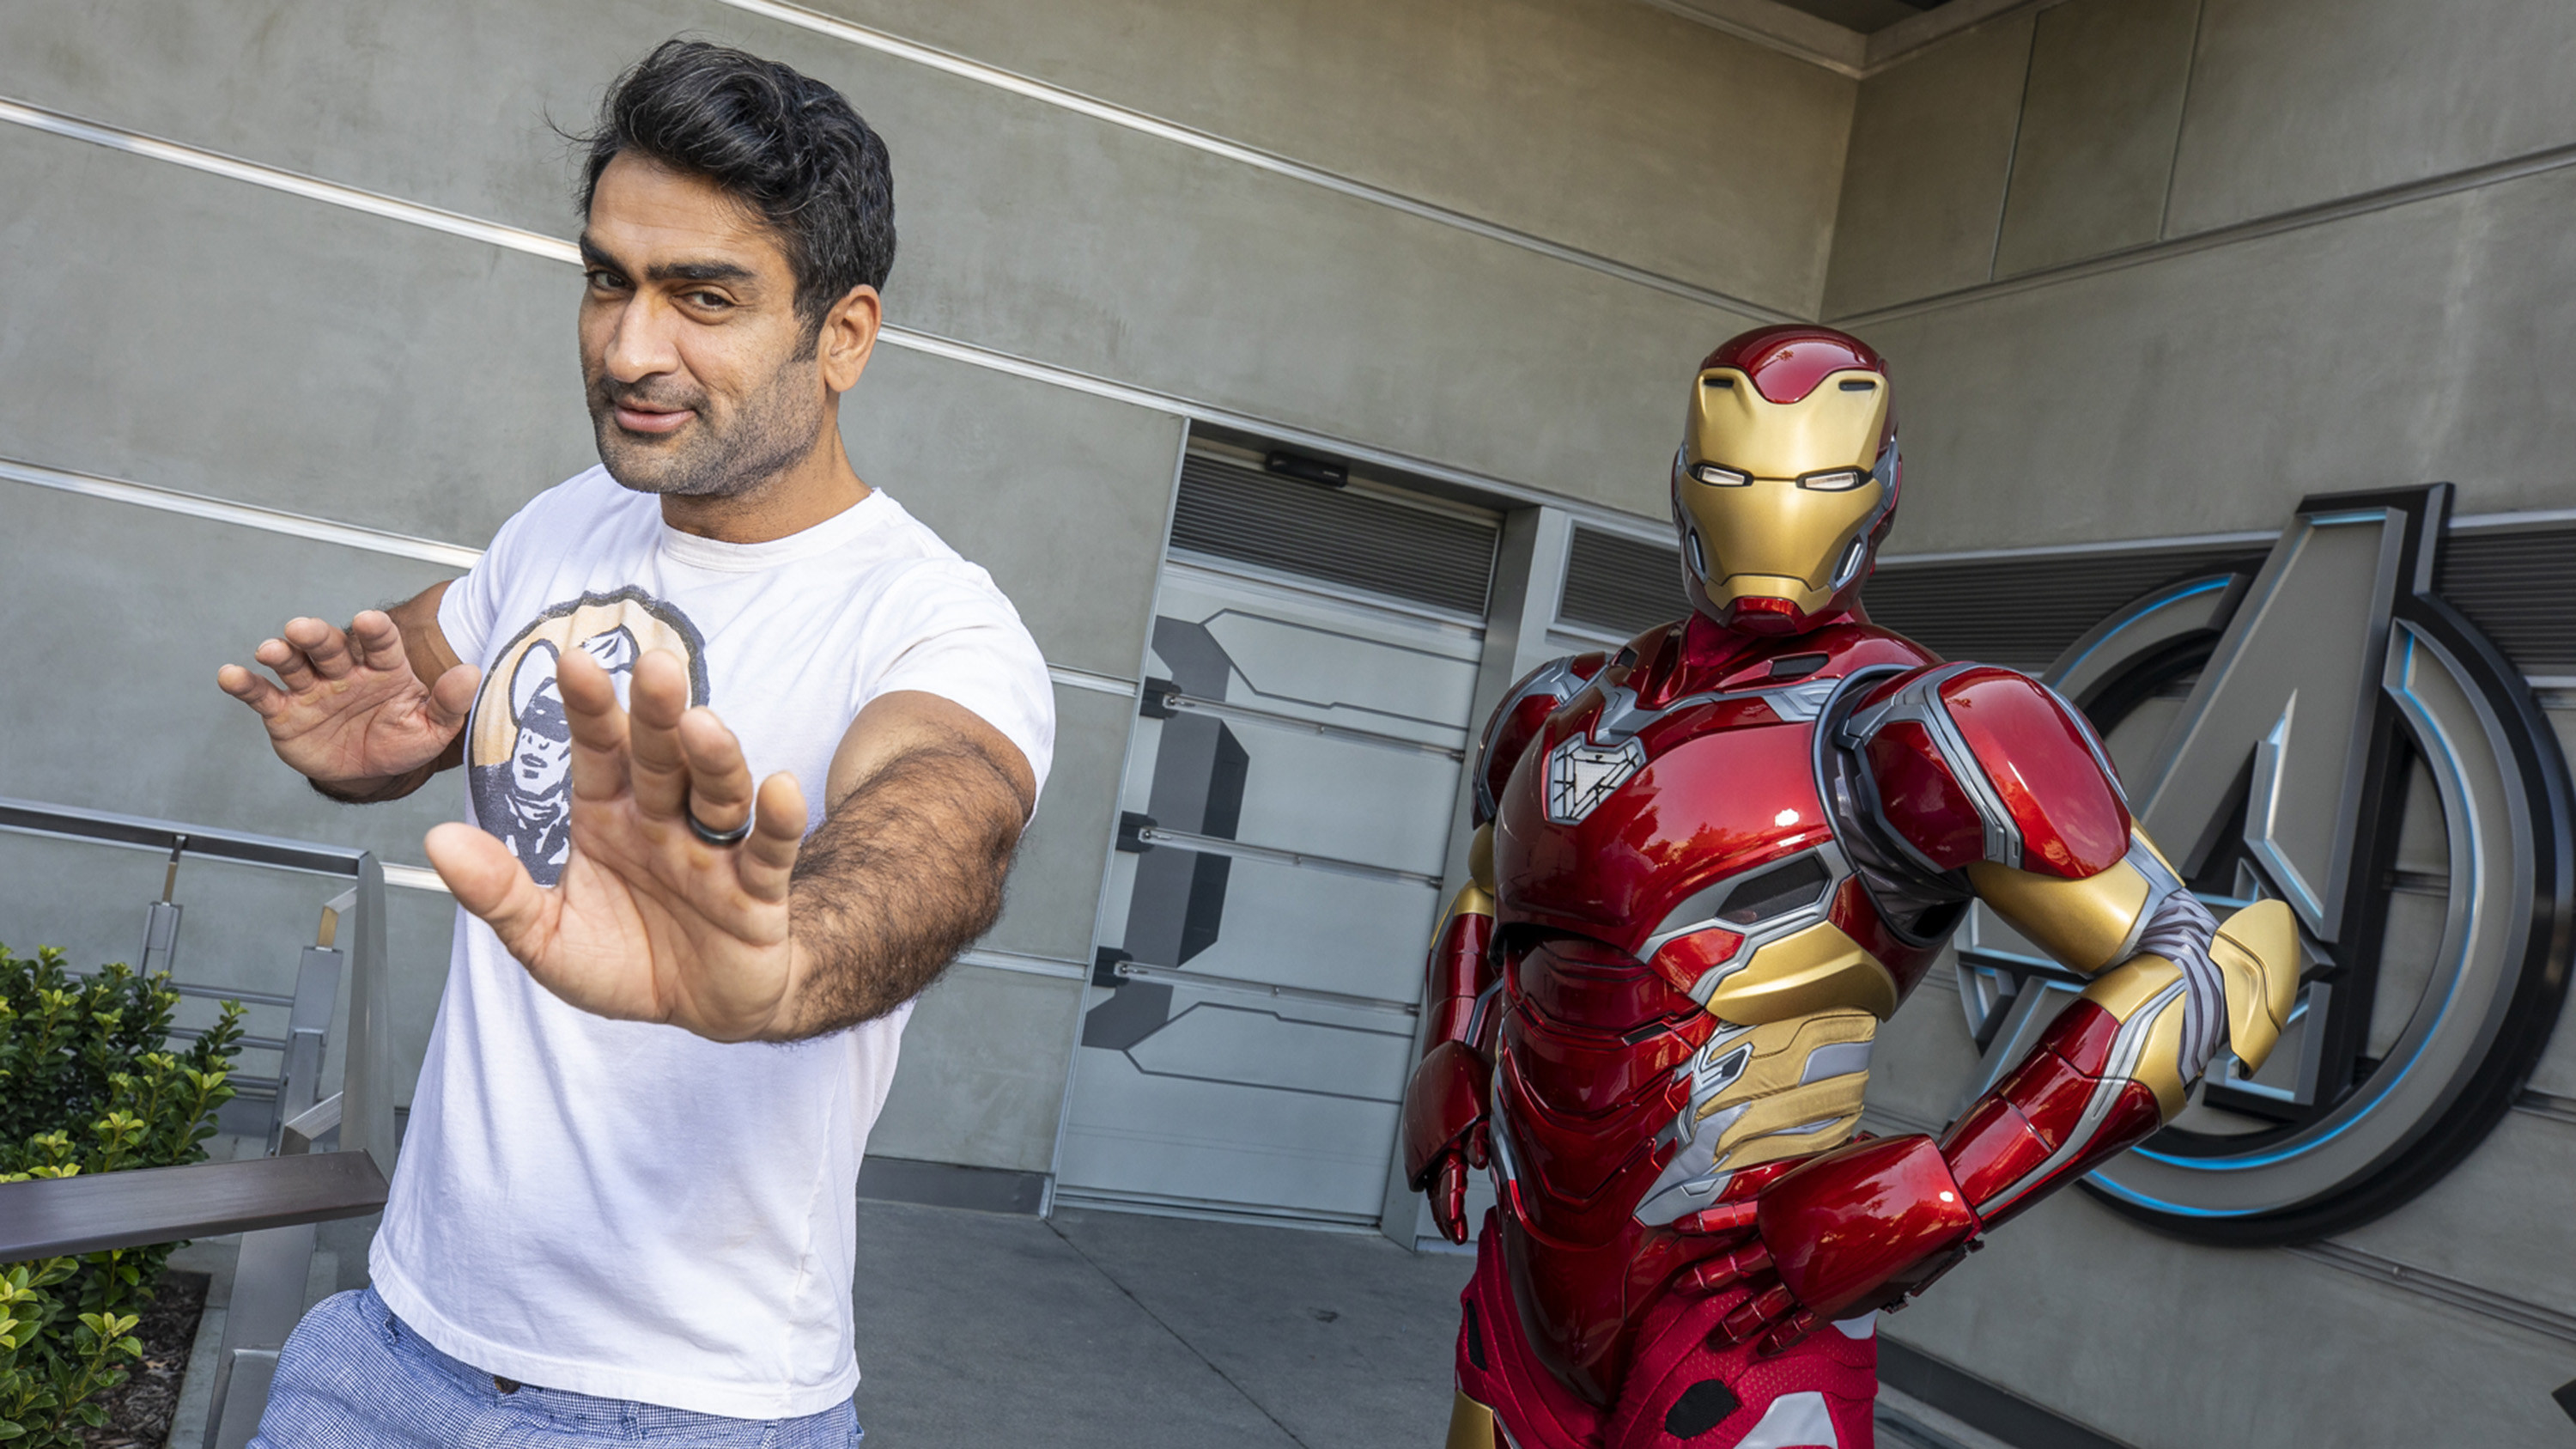 Kumail Nanjiani posing with a statue of Iron Man